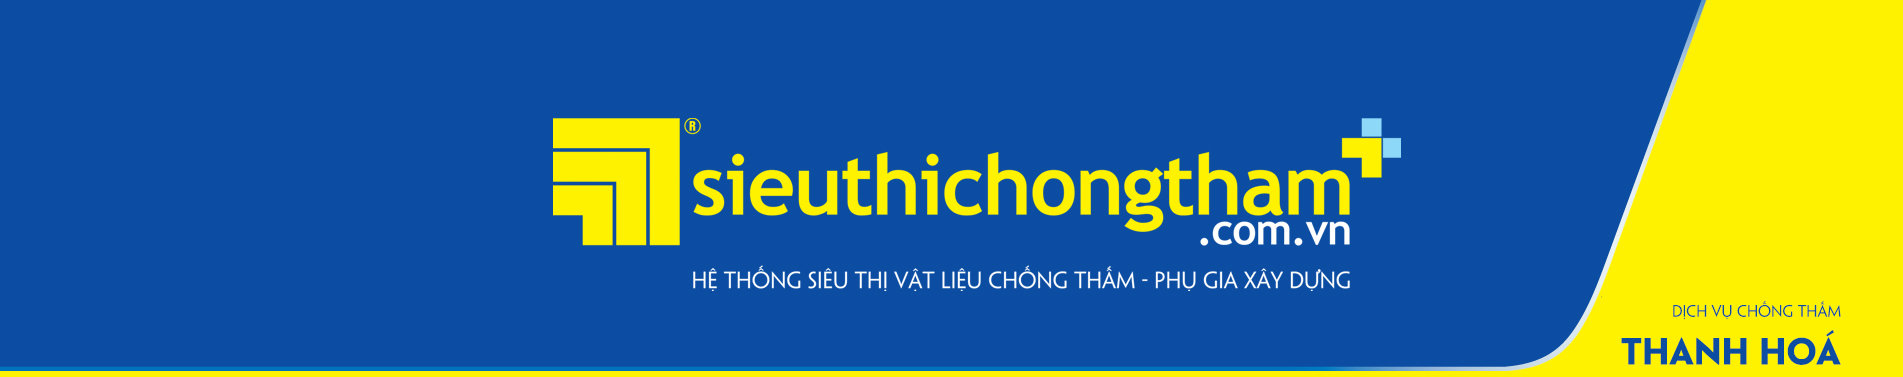 Dich Vu Chong Tham Thanh Hoa